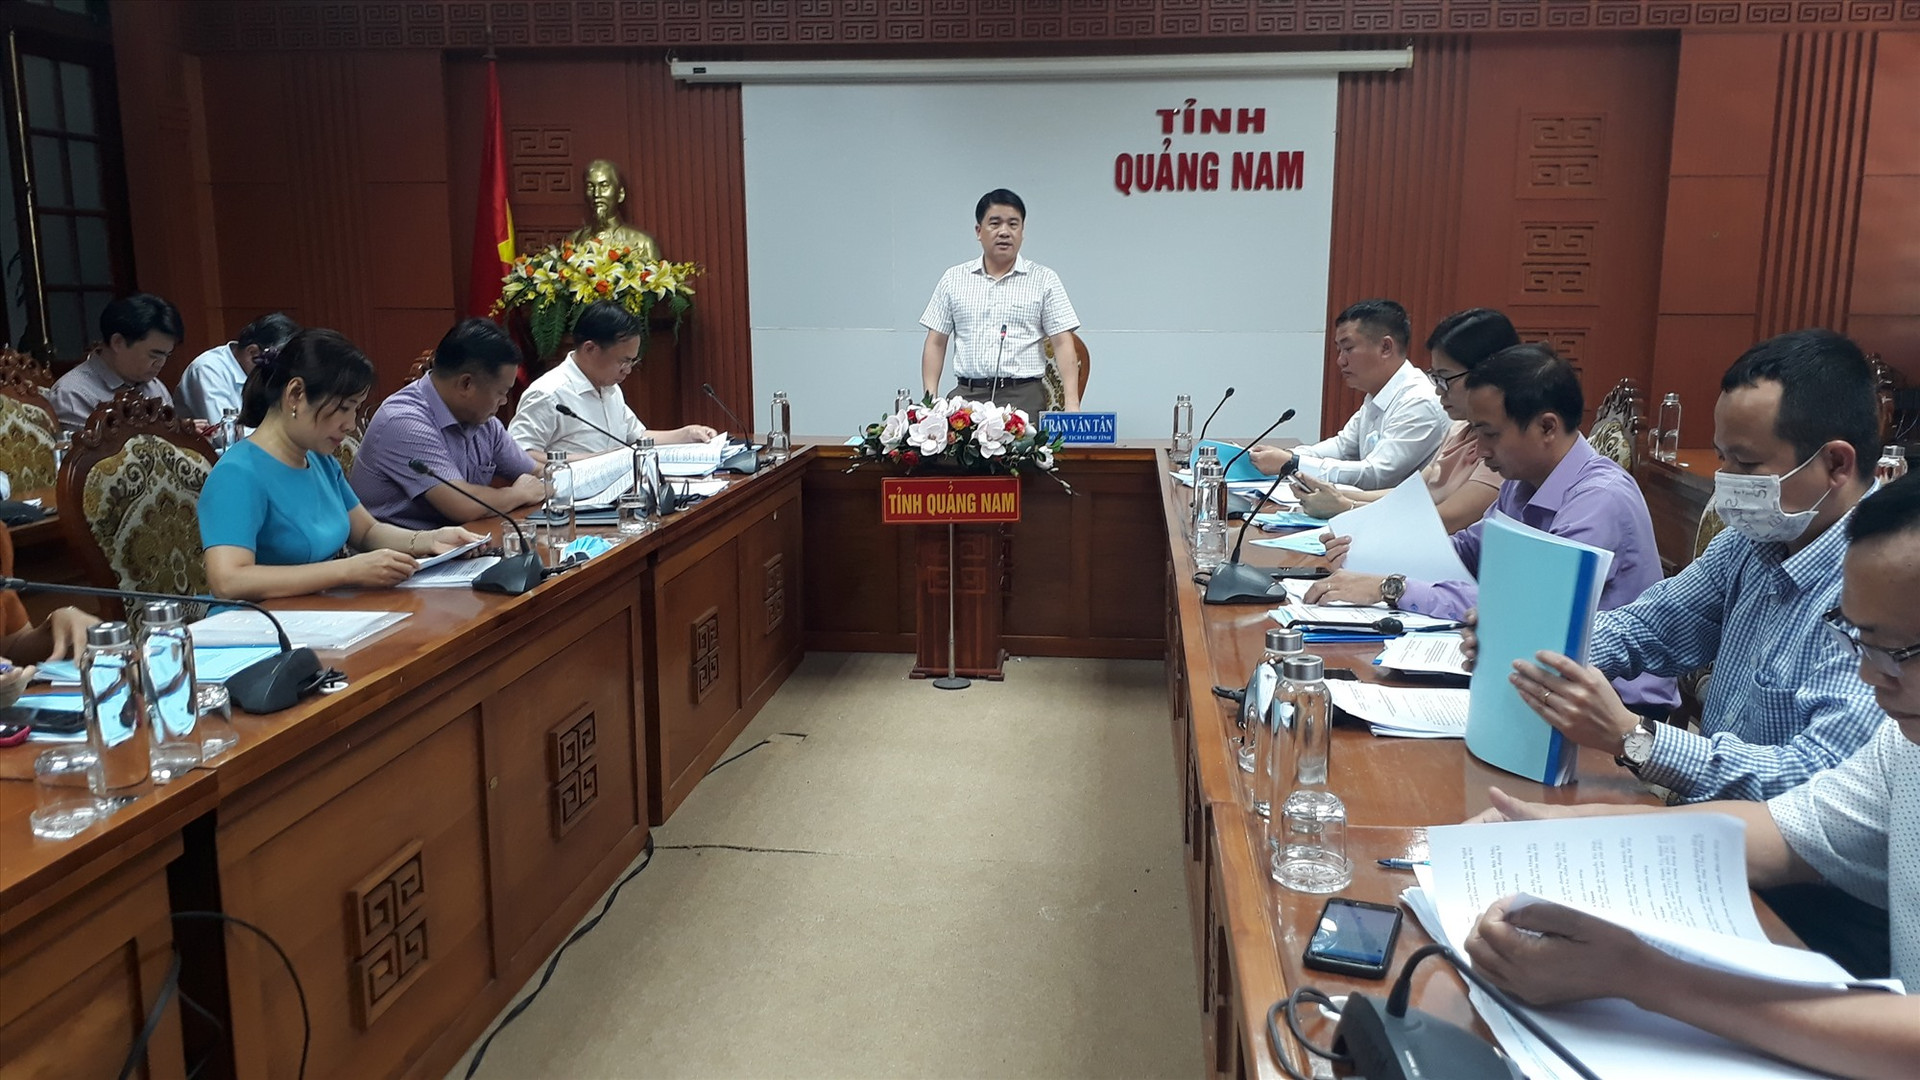 Phó Chủ tịch UBND tỉnh Trần Văn Tân cho biết mua sắm trang thiết bị tập luyện thuộc thẩm quyền quyết định của UBND tỉnh. Ảnh: T.V